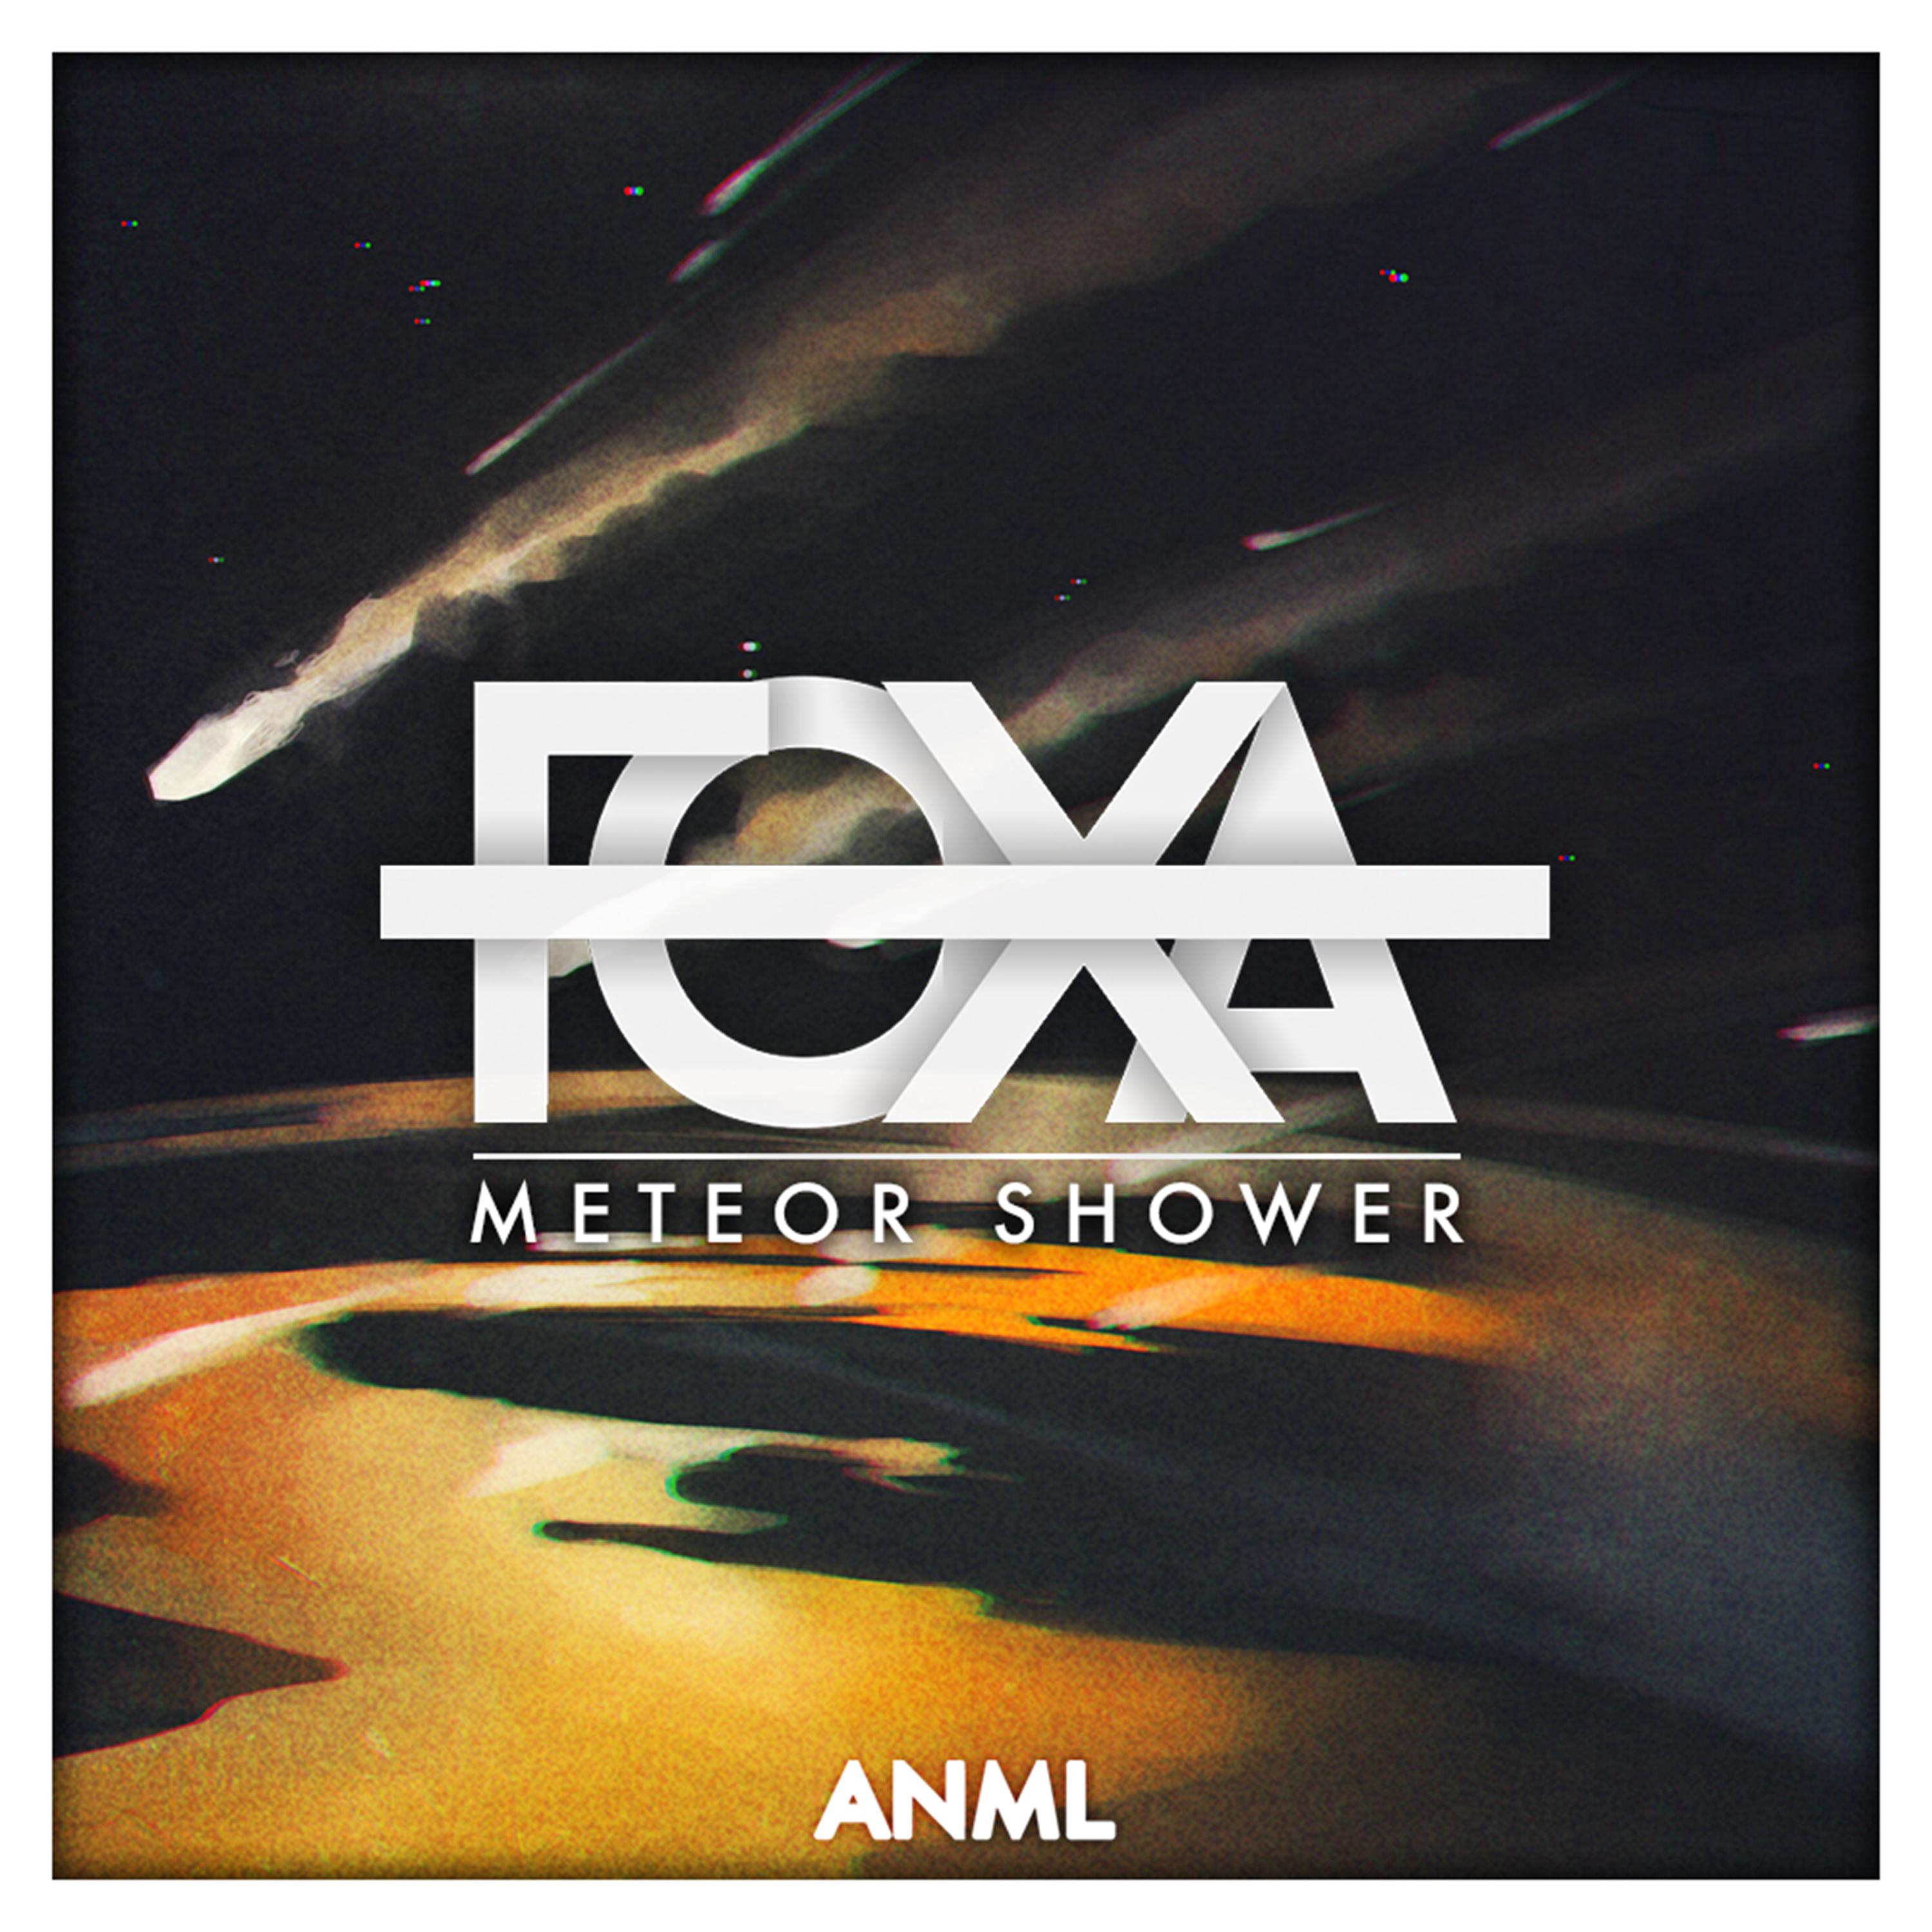 Foxa - Meteor Shower